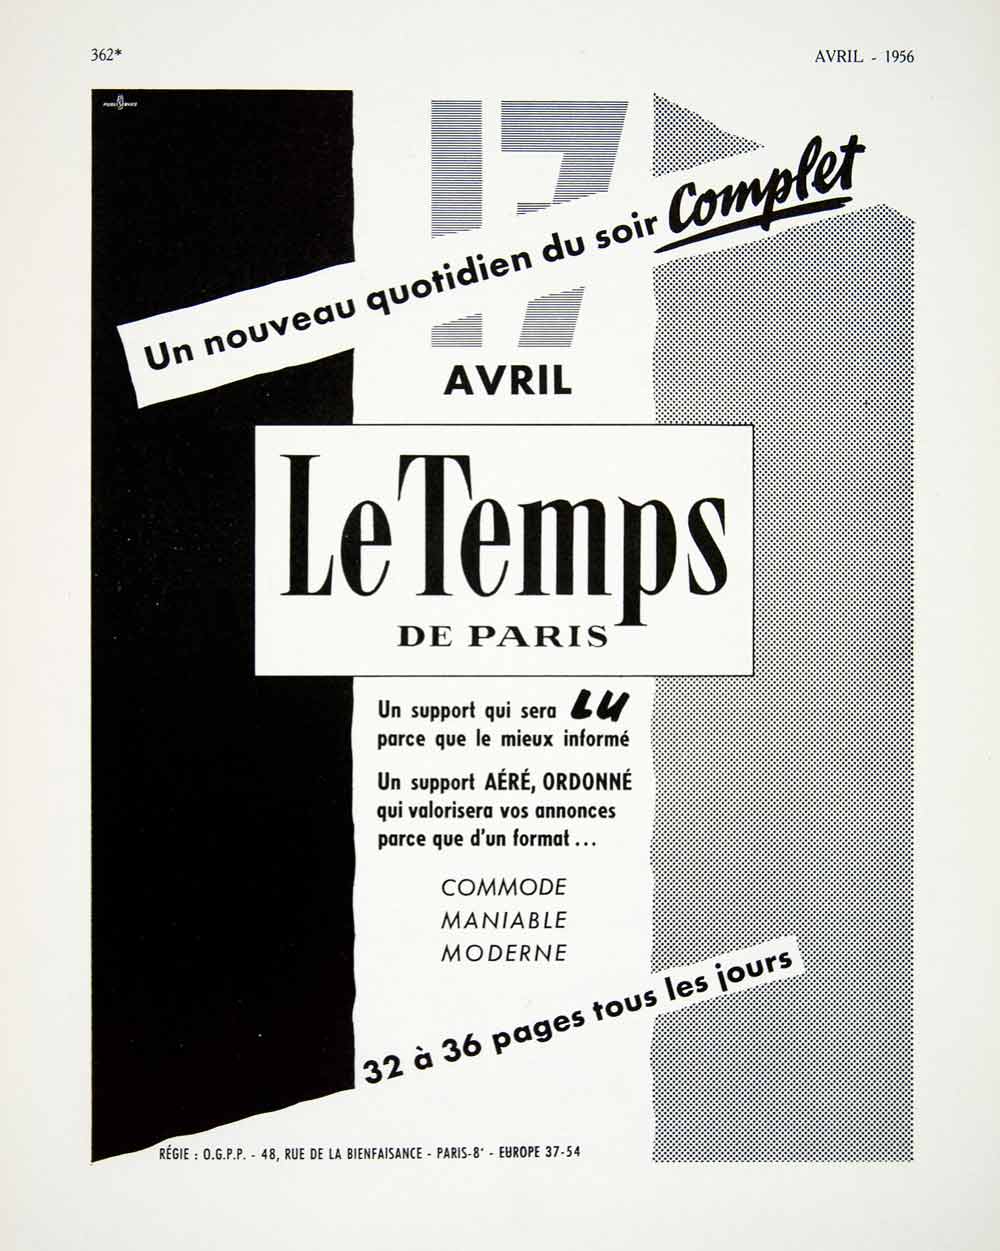 1956 Ad Le Temps De Paris French Parisian Newspaper Launch April 17th VEN6